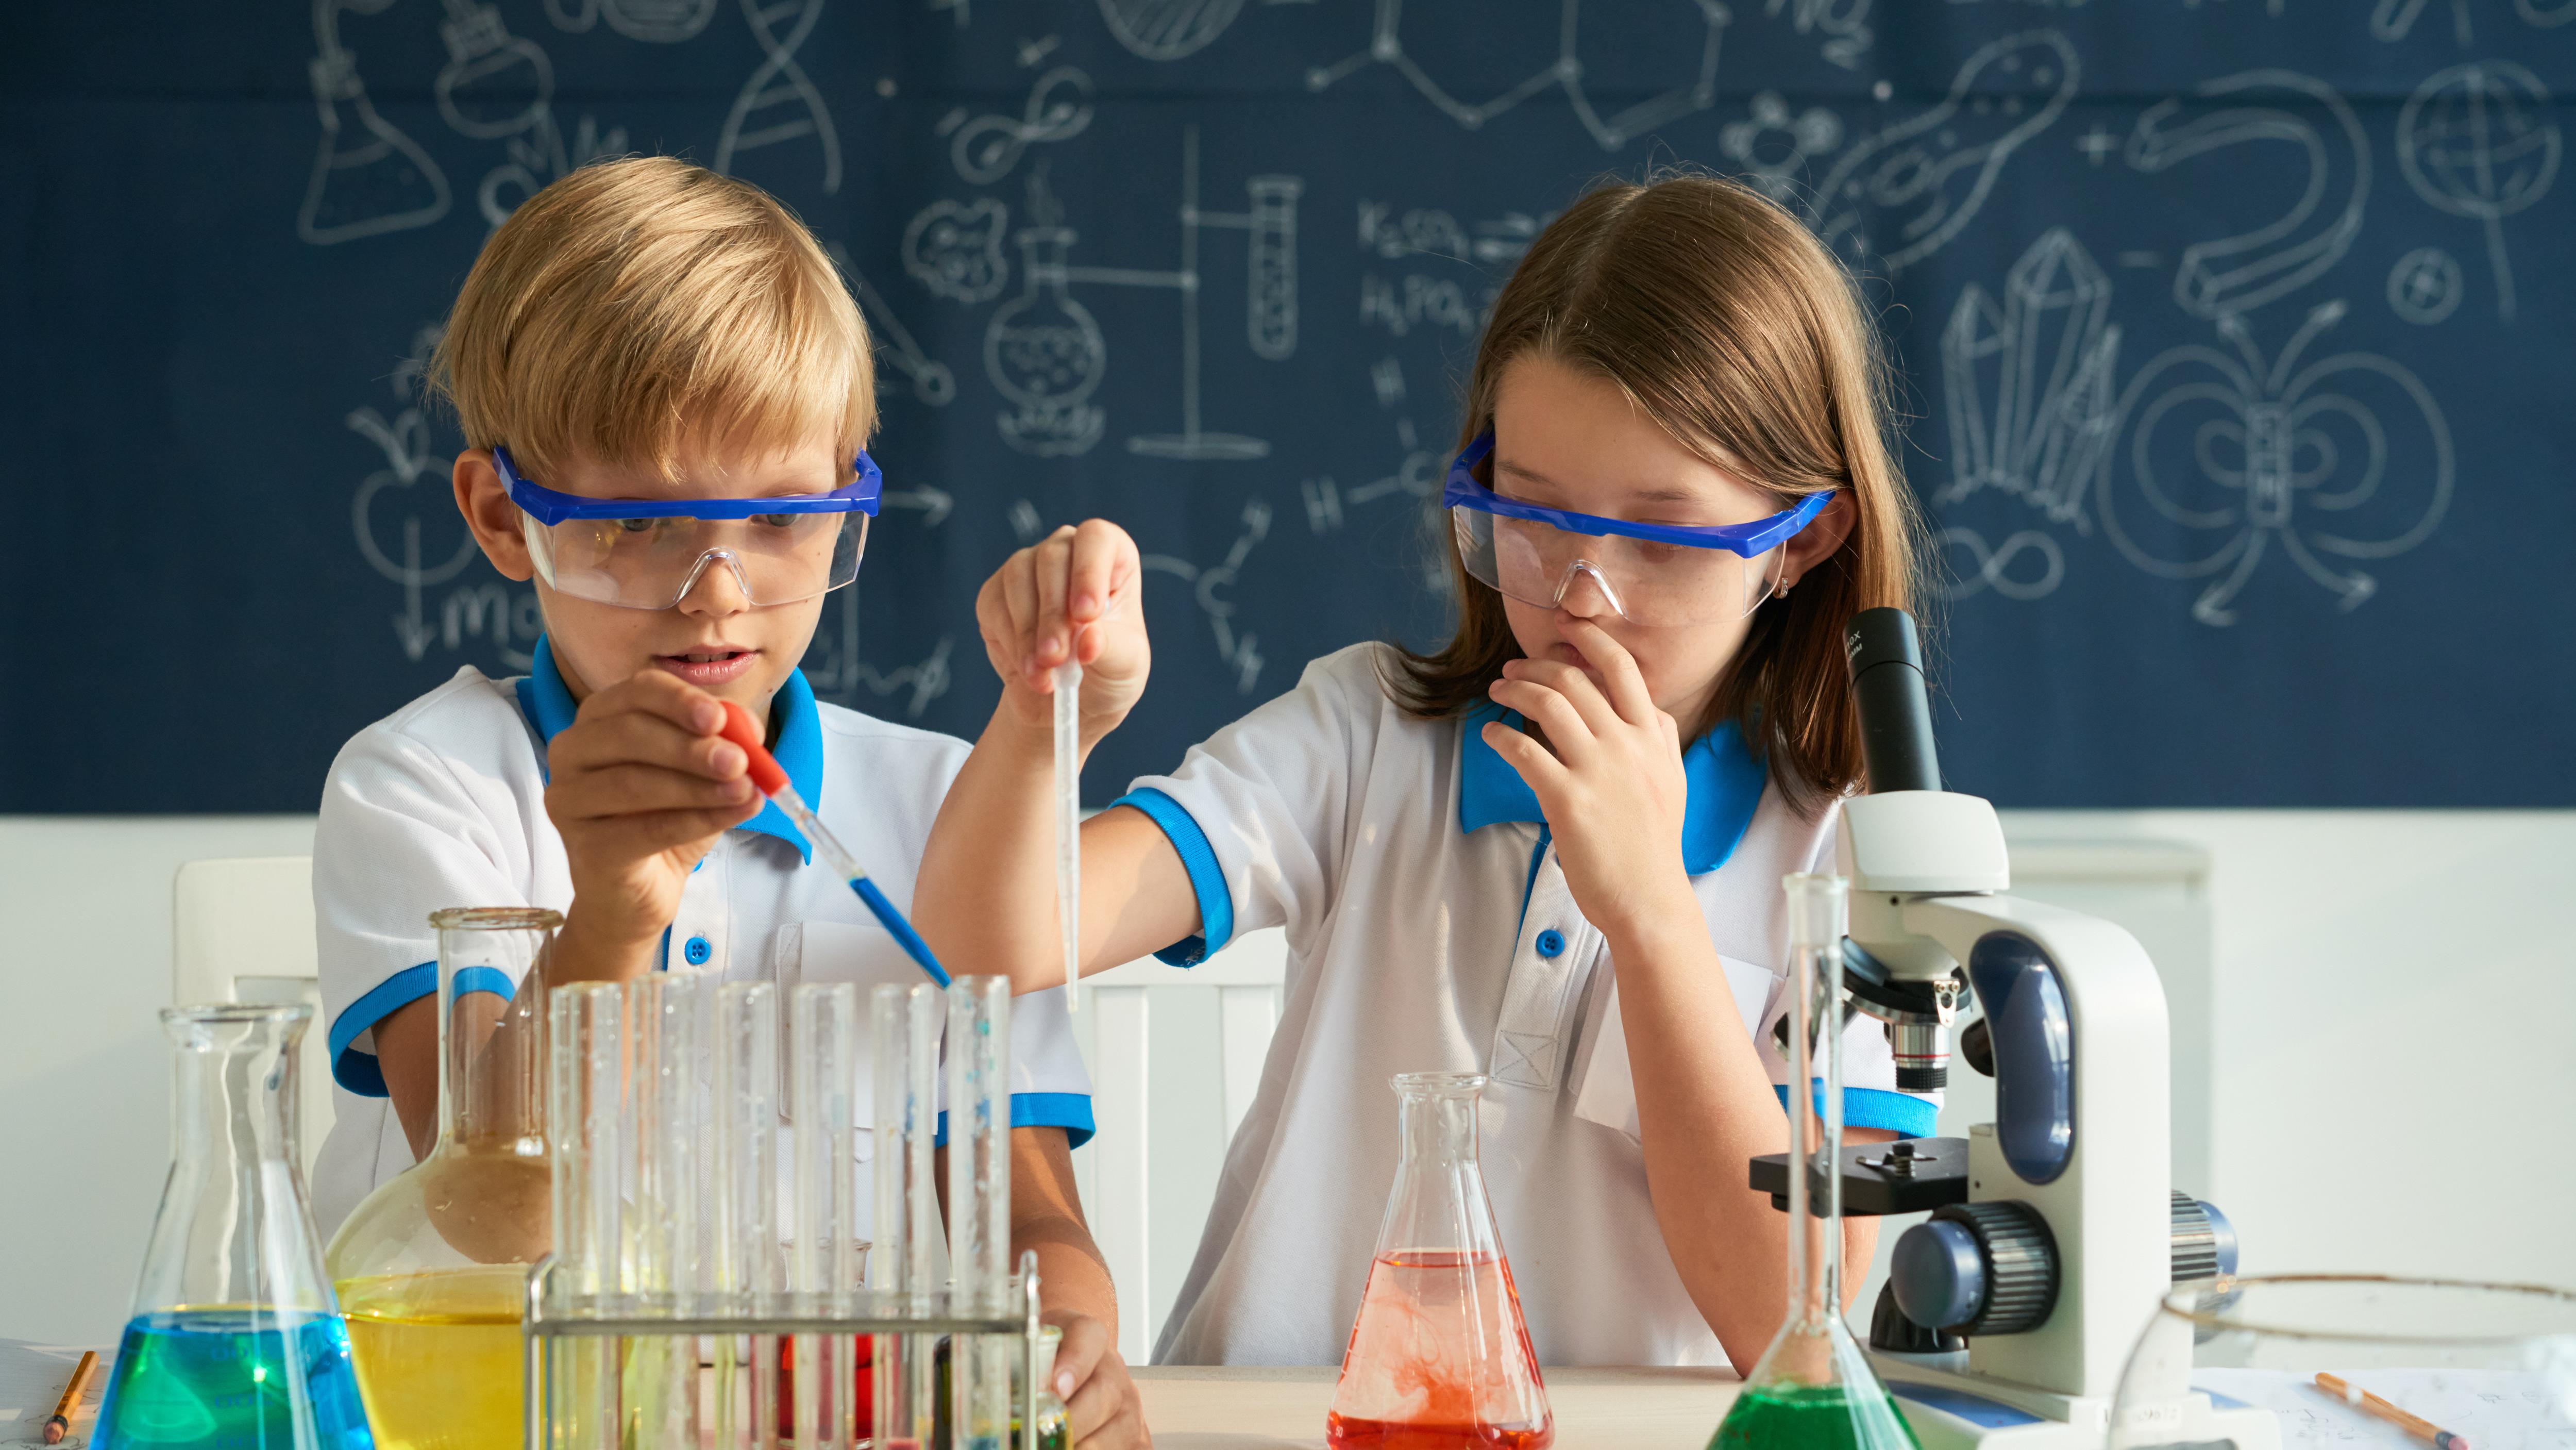 Клас химии. Урок химии. Химия дети школа. Эксперименты для детей. Химия эксперименты.